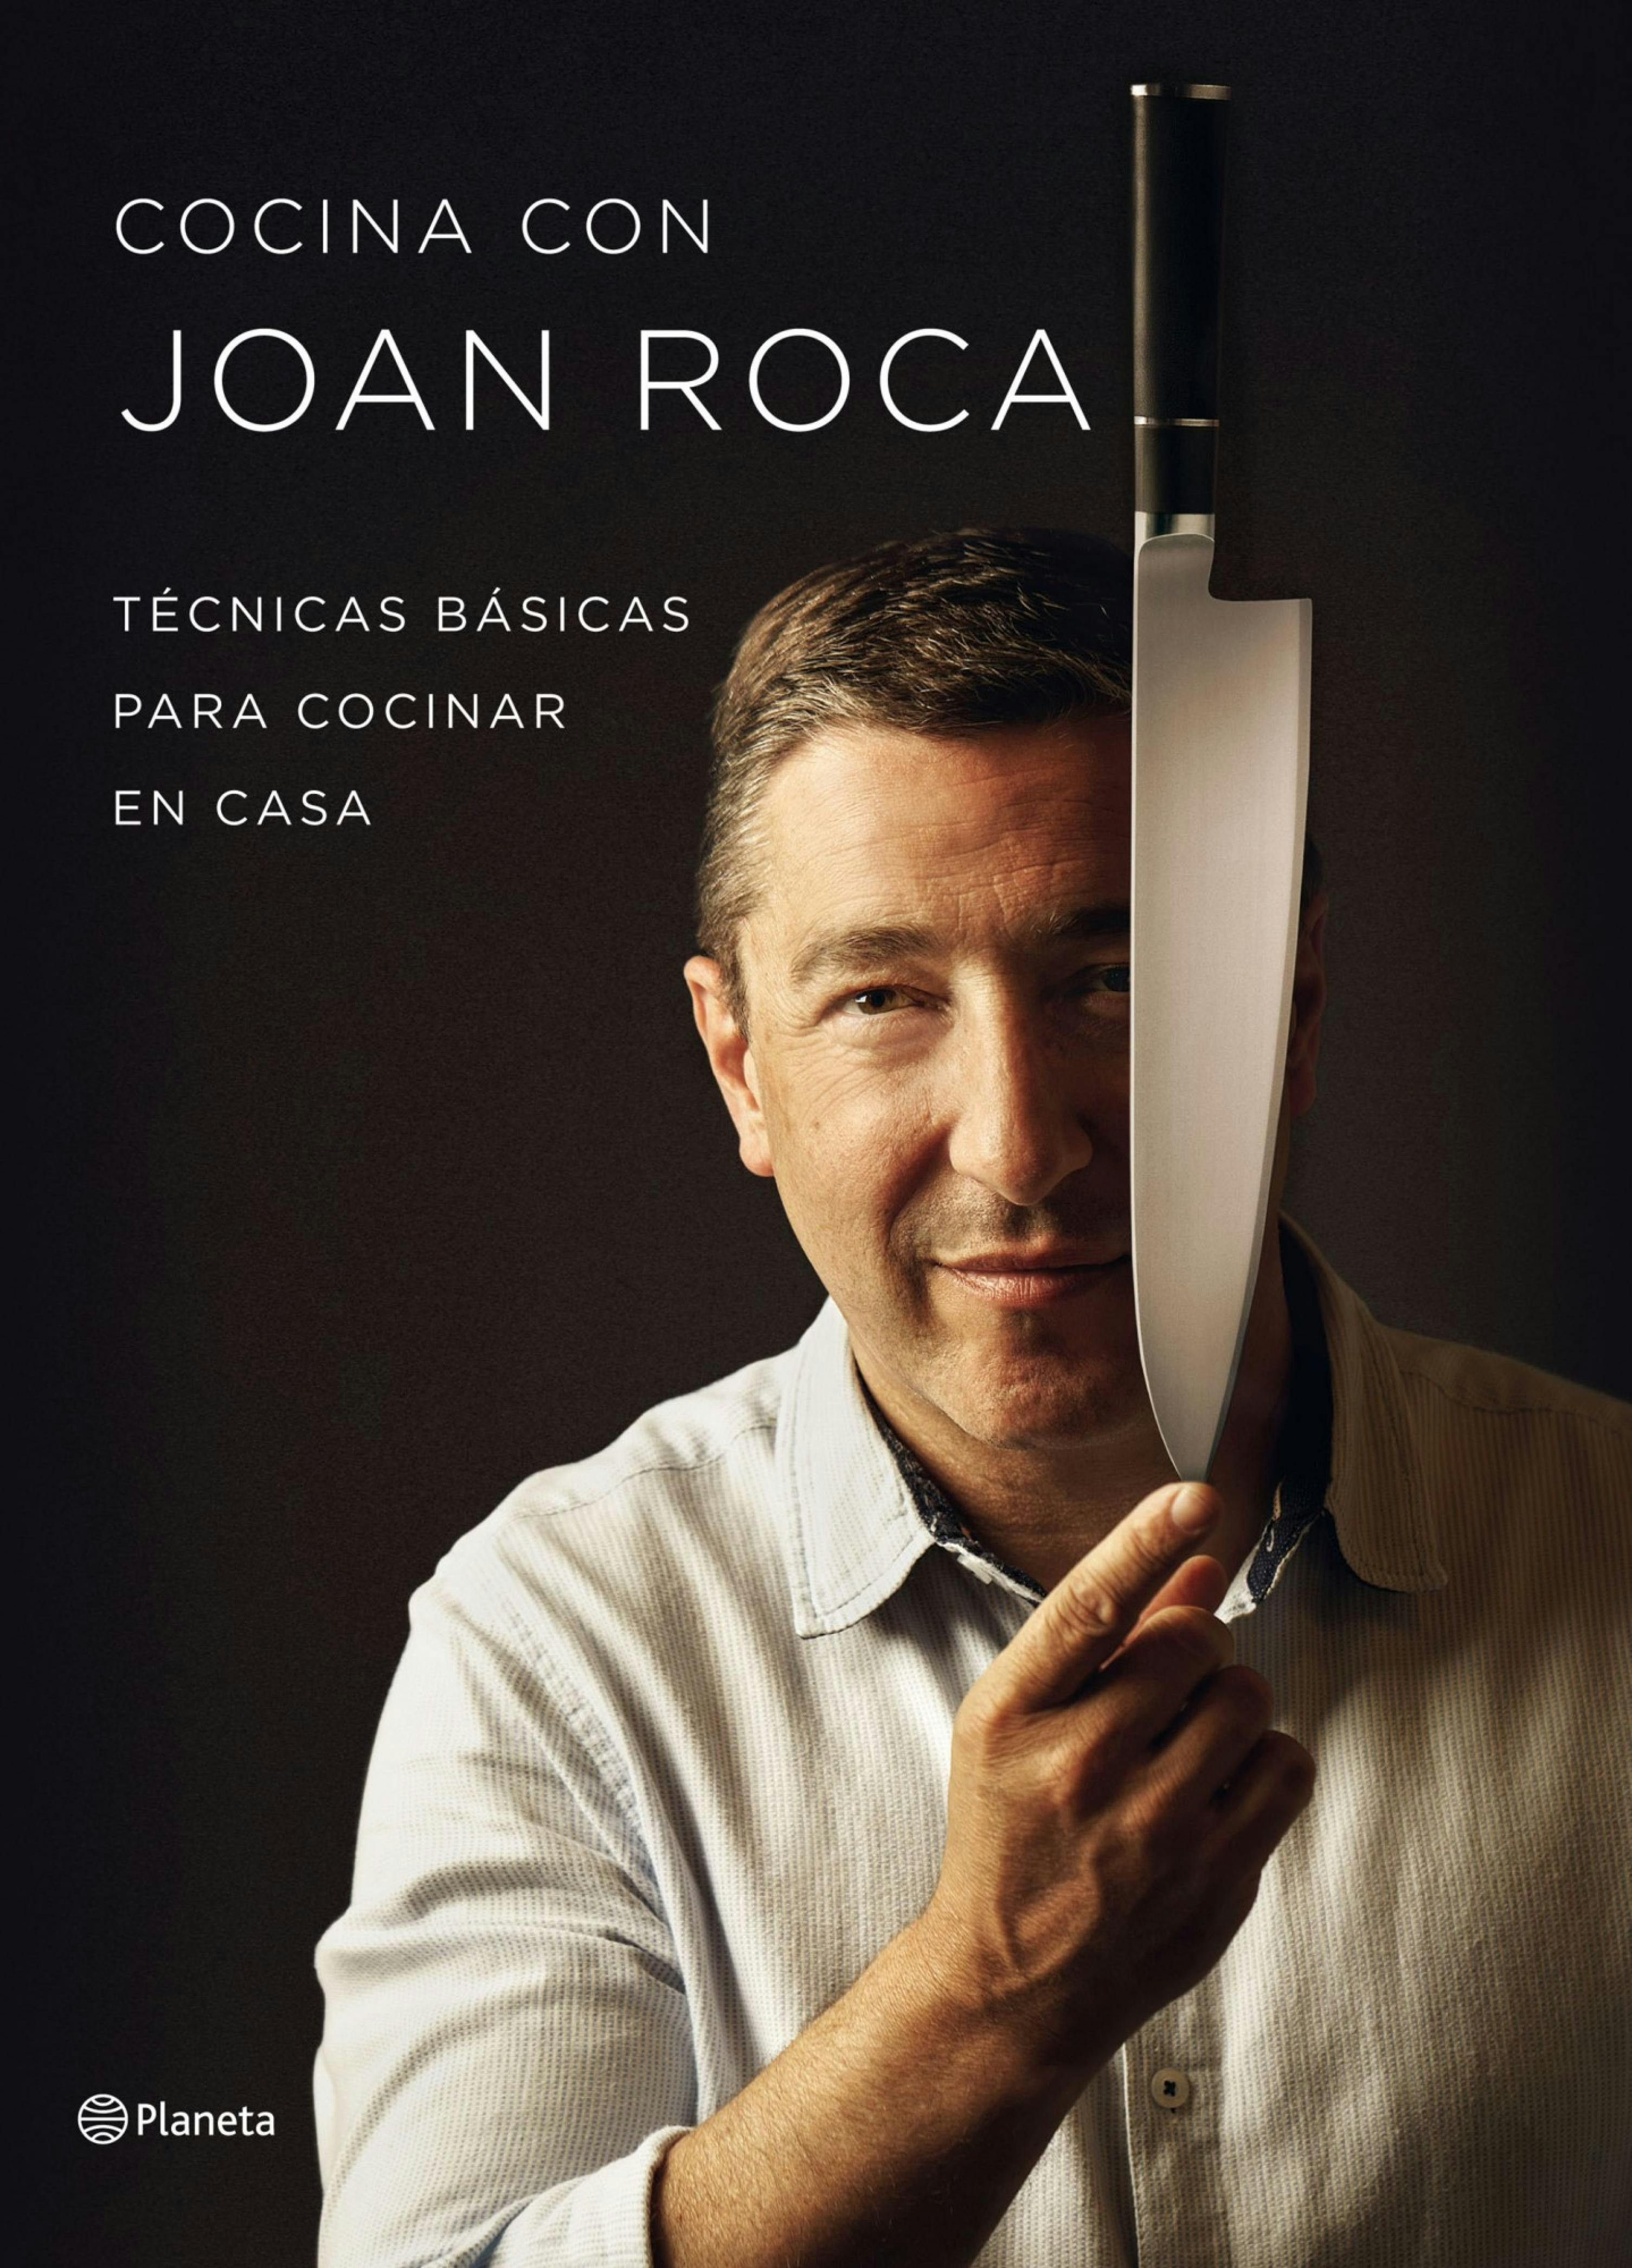 Cocina con Joan Roca: Técnicas básicas para cocinar en casa - Joan Roca